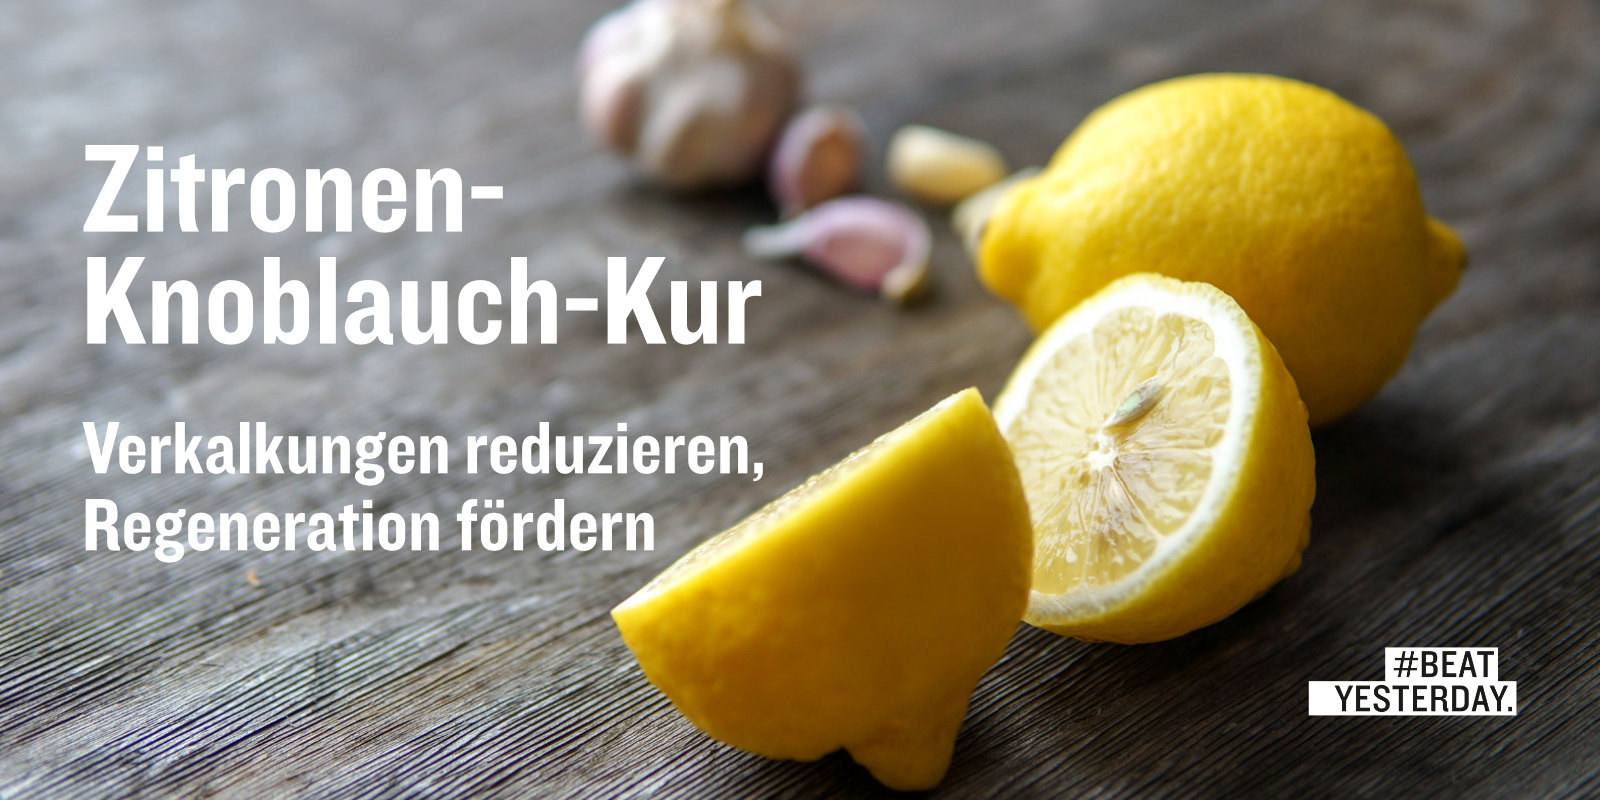 Zitronen-Knoblauch-Kur: So mischst du den gesunden Shot | #BeatYesterday